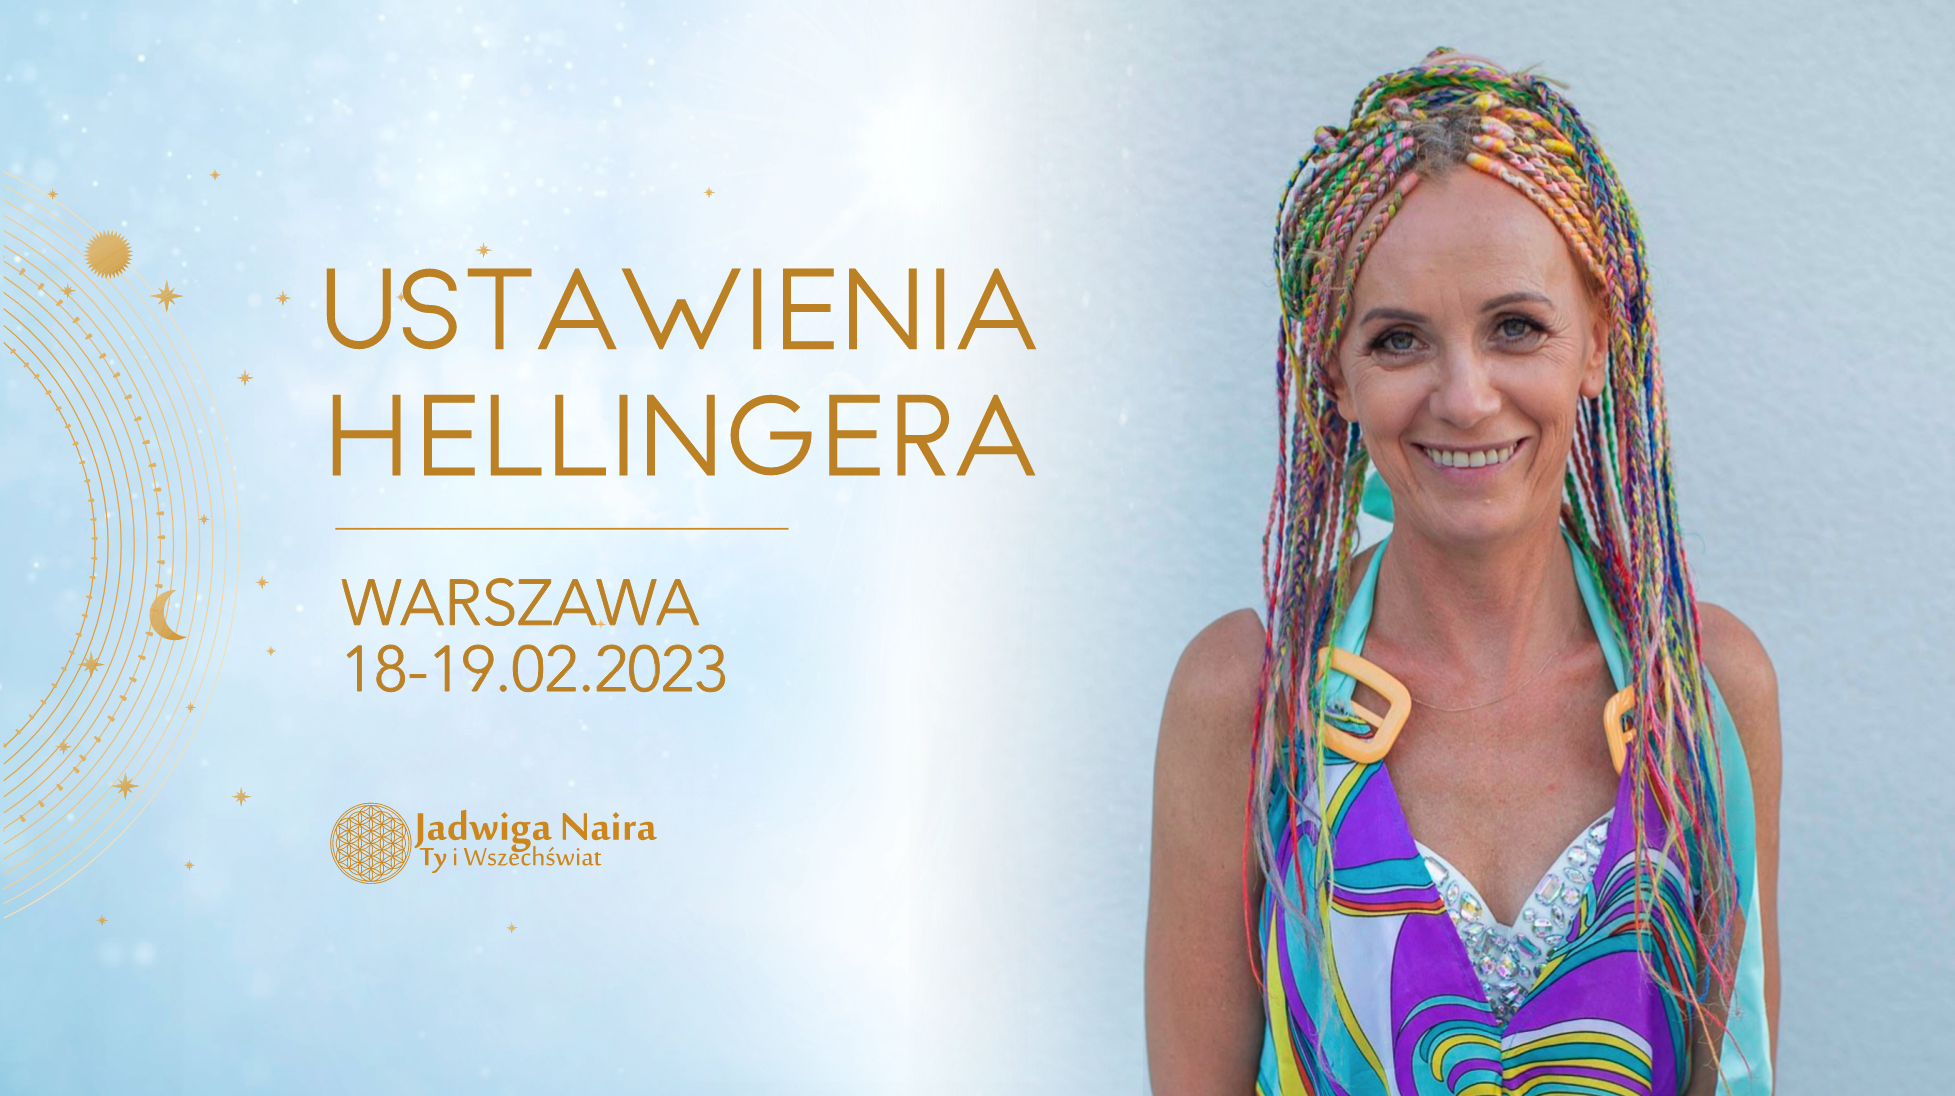 Ustawienia Hellingera / Warszawa 18-19 lutego 2023 - LISTA REZERWOWA